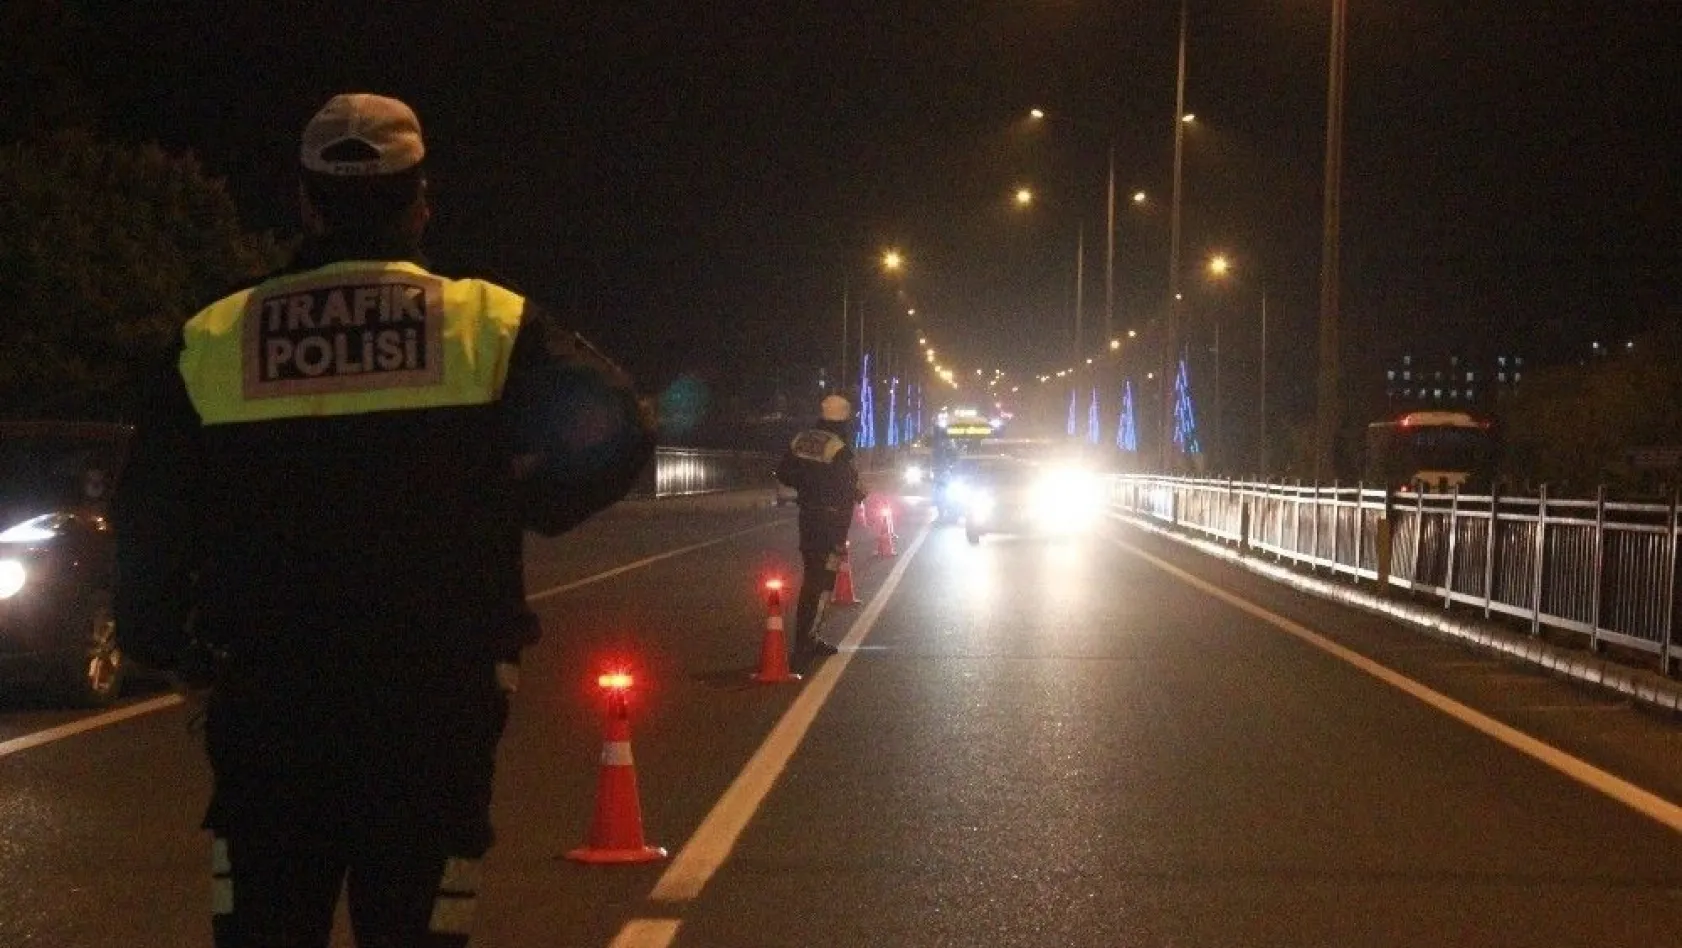 Bingöl polisi gece uygulamasıyla sürücüleri uyardı
